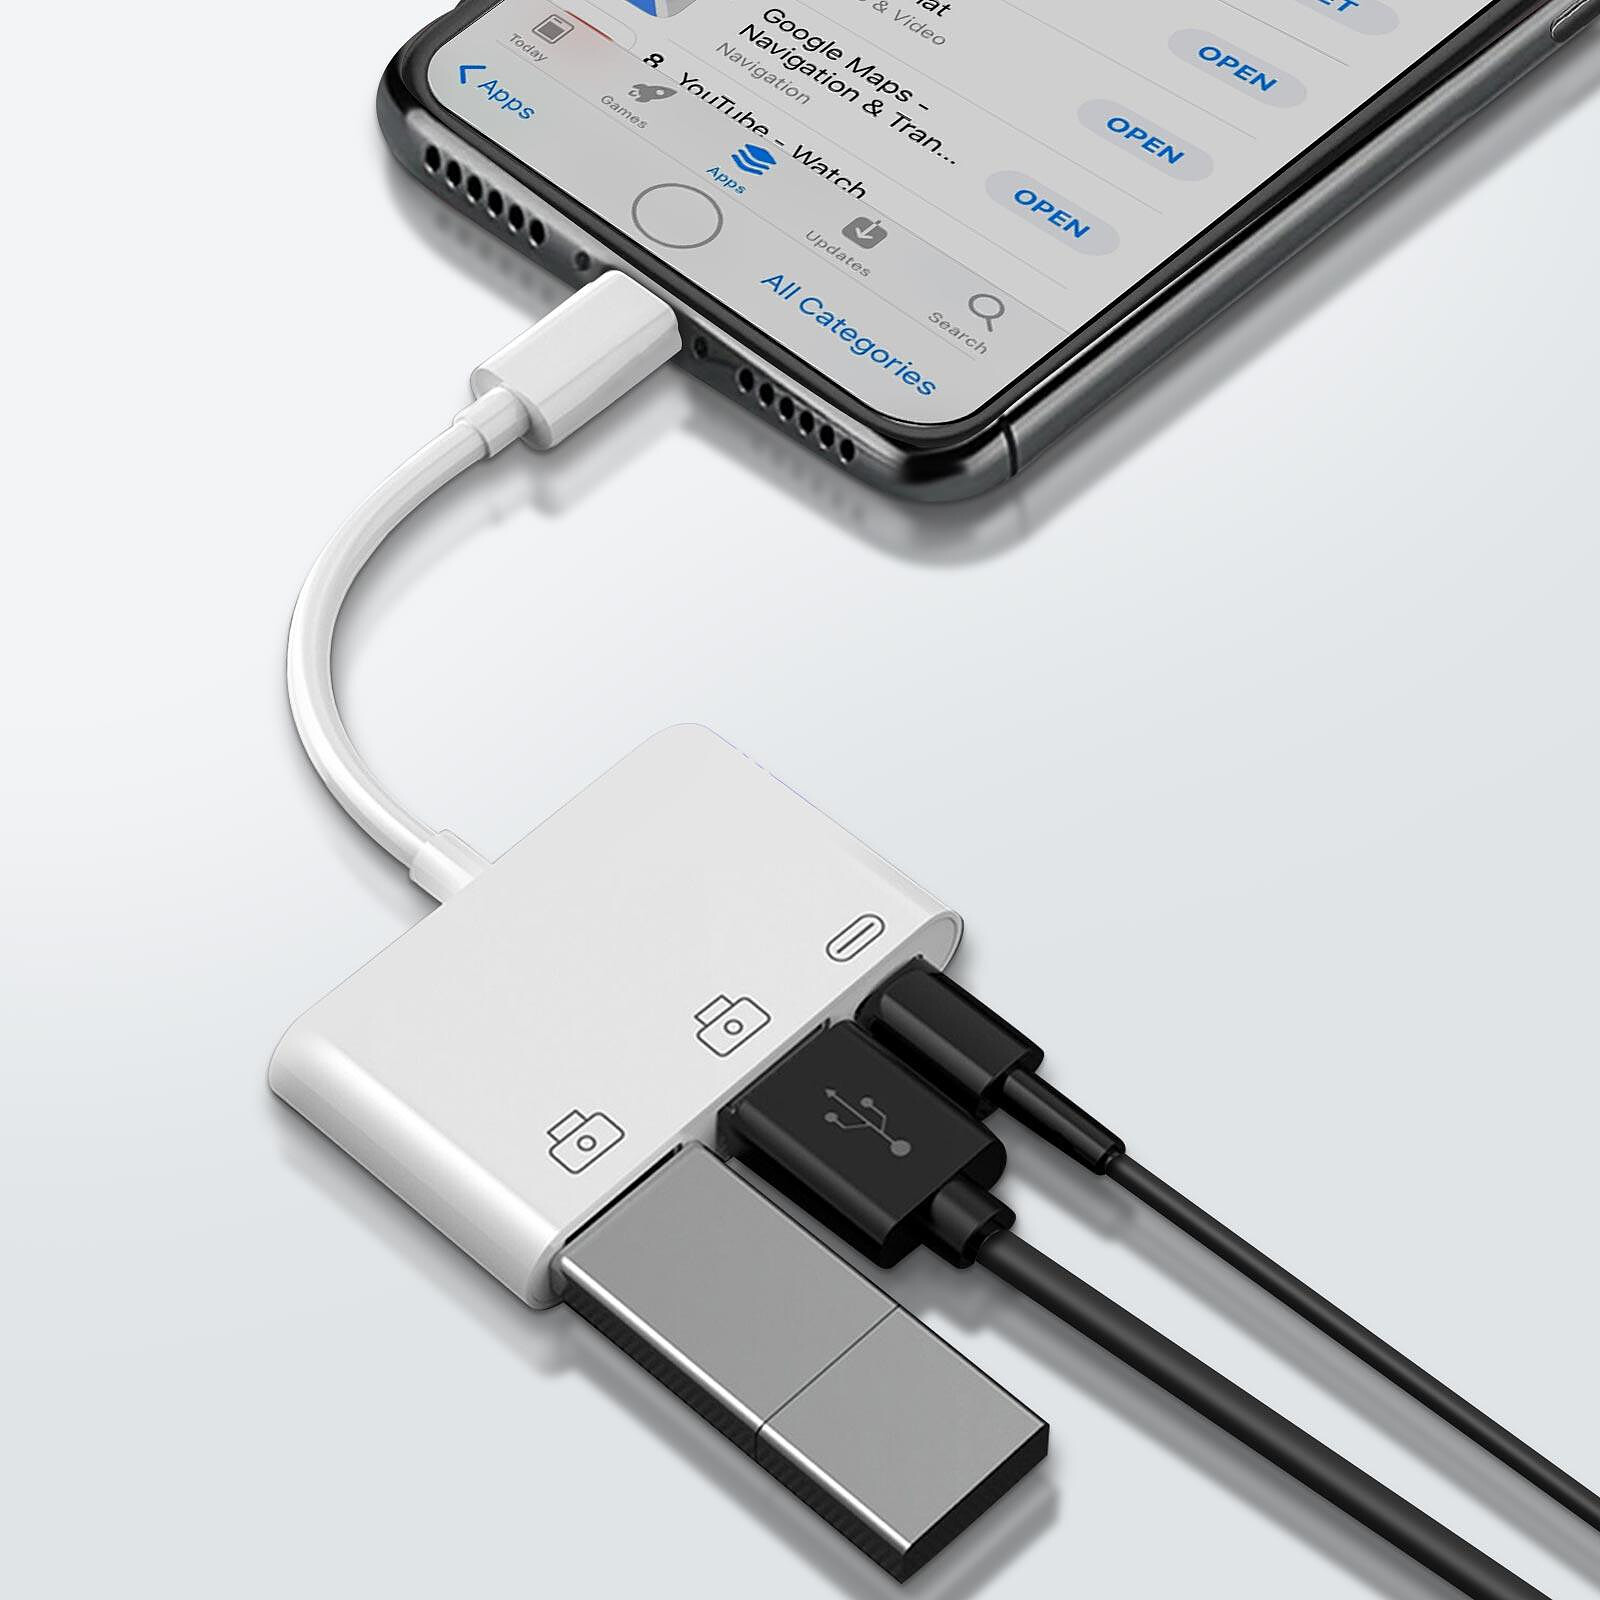 Adaptateur iPhone / iPad Lightning vers USB + Jack 3.5mm +